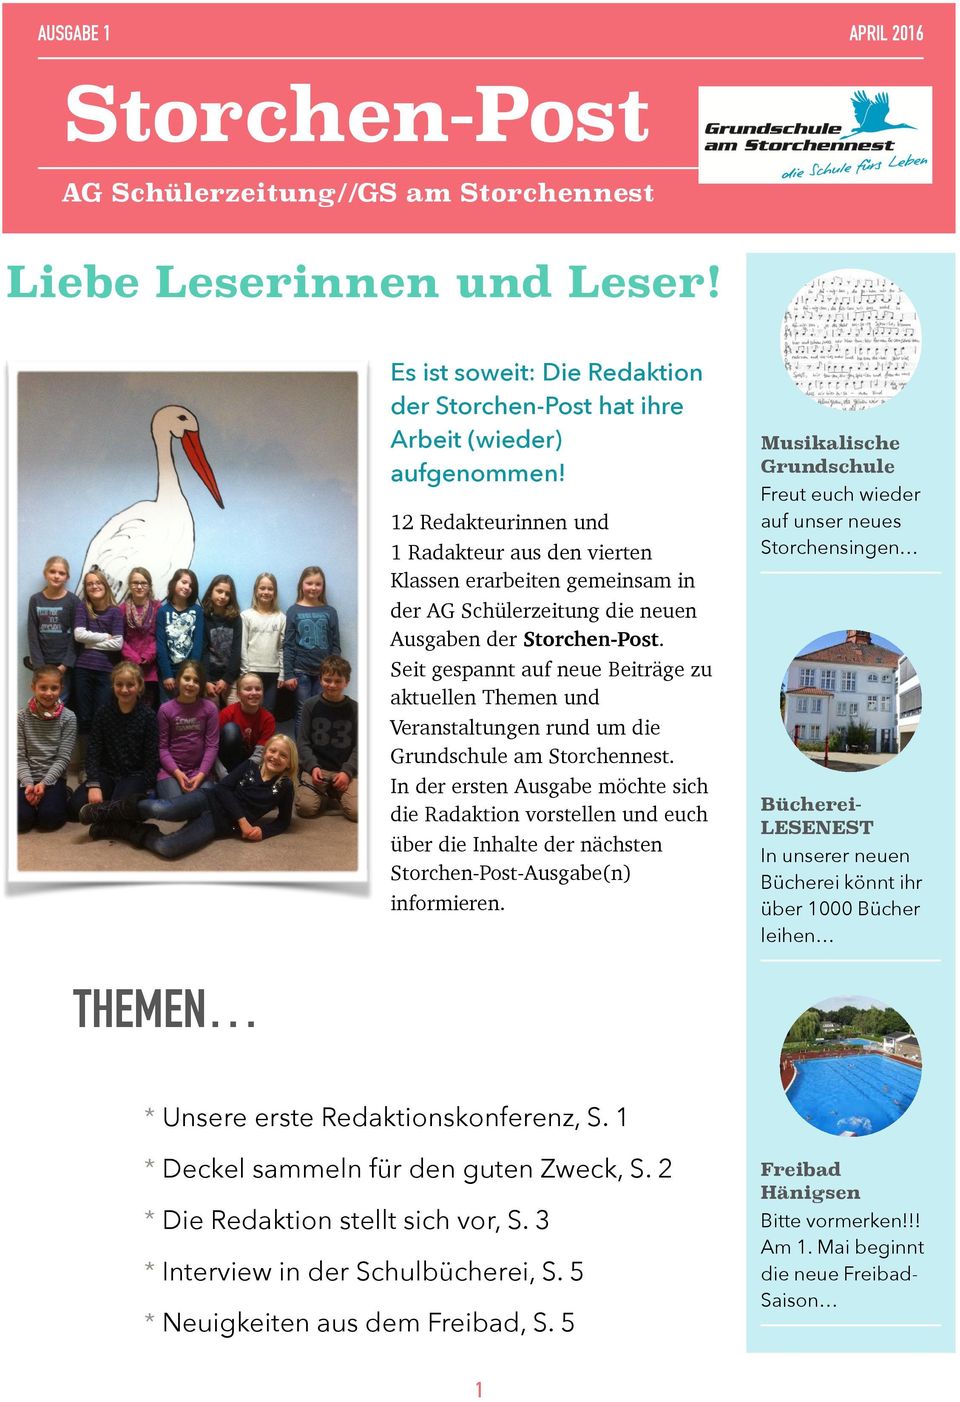 Seit gespannt auf neue Beiträge zu aktuellen Themen und Veranstaltungen rund um die Grundschule am Storchennest.